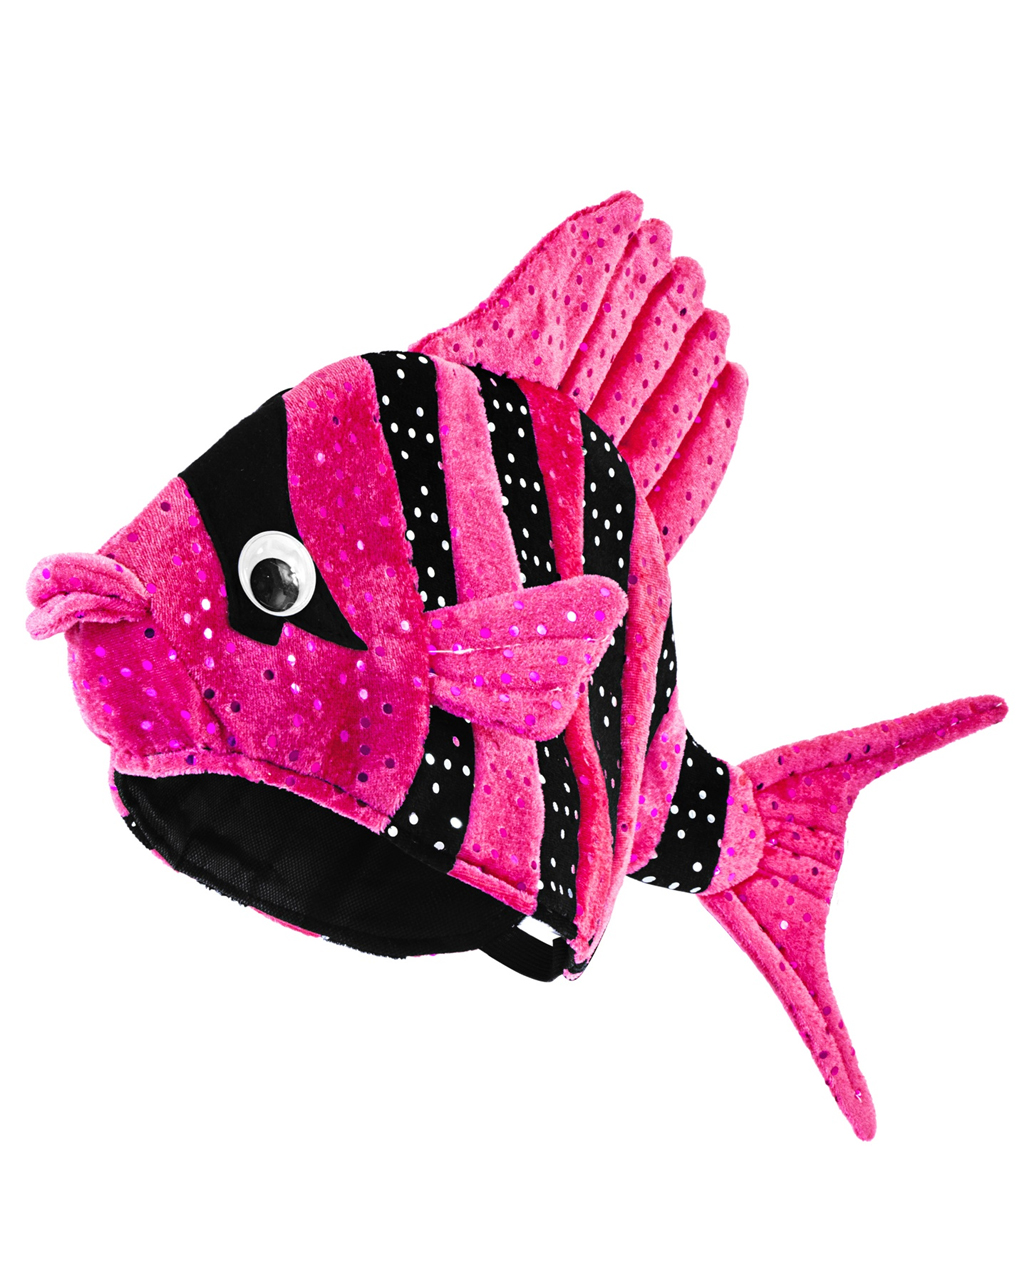 Exotischer Fischhut Pink für Beachparty